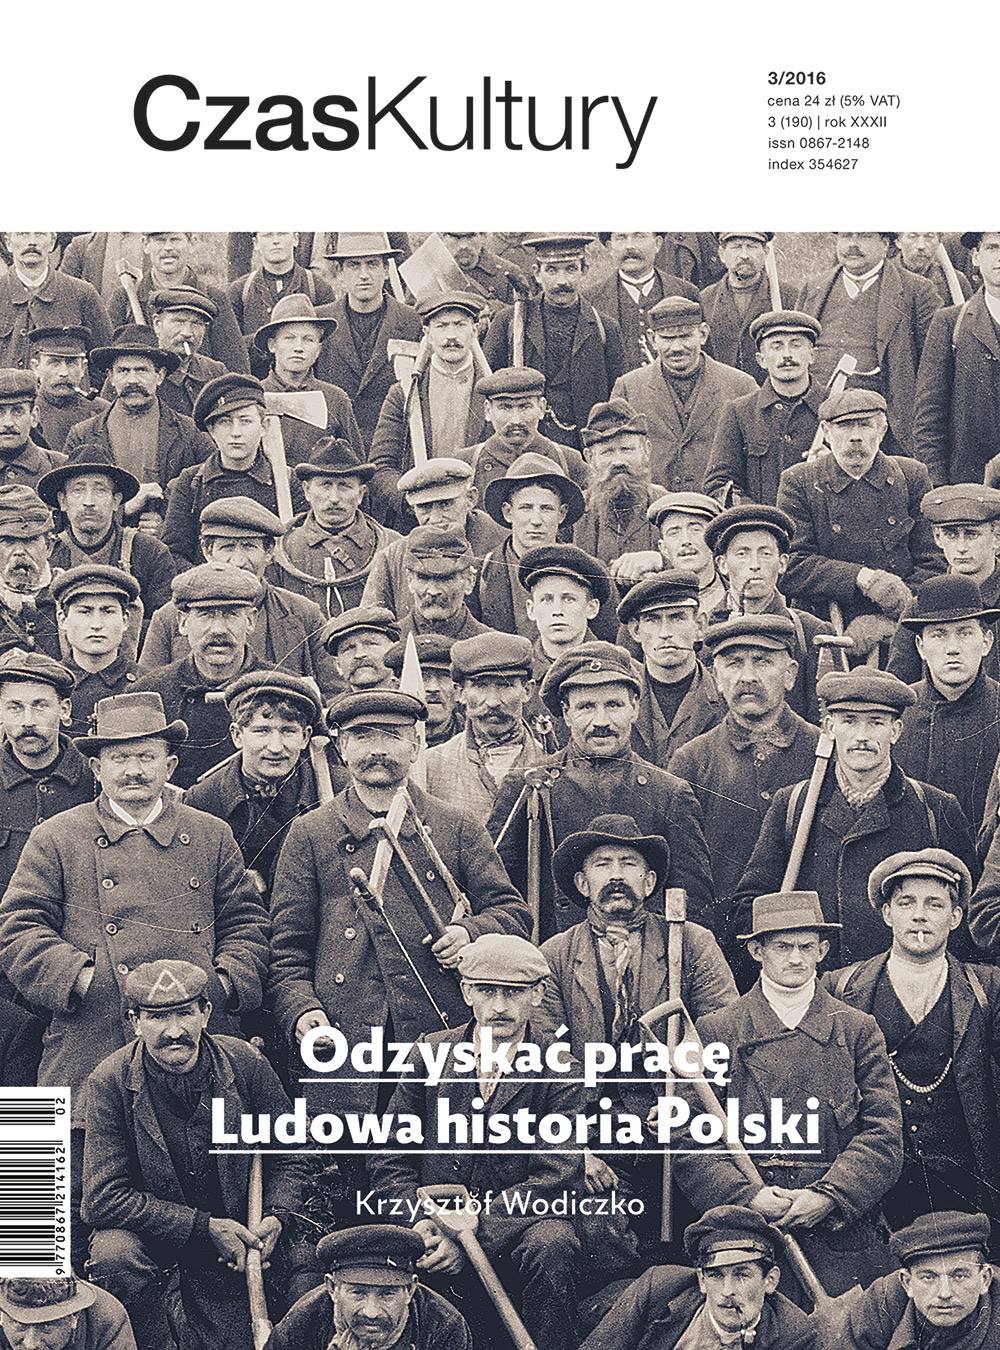 Polish-style Slavery Cover Image